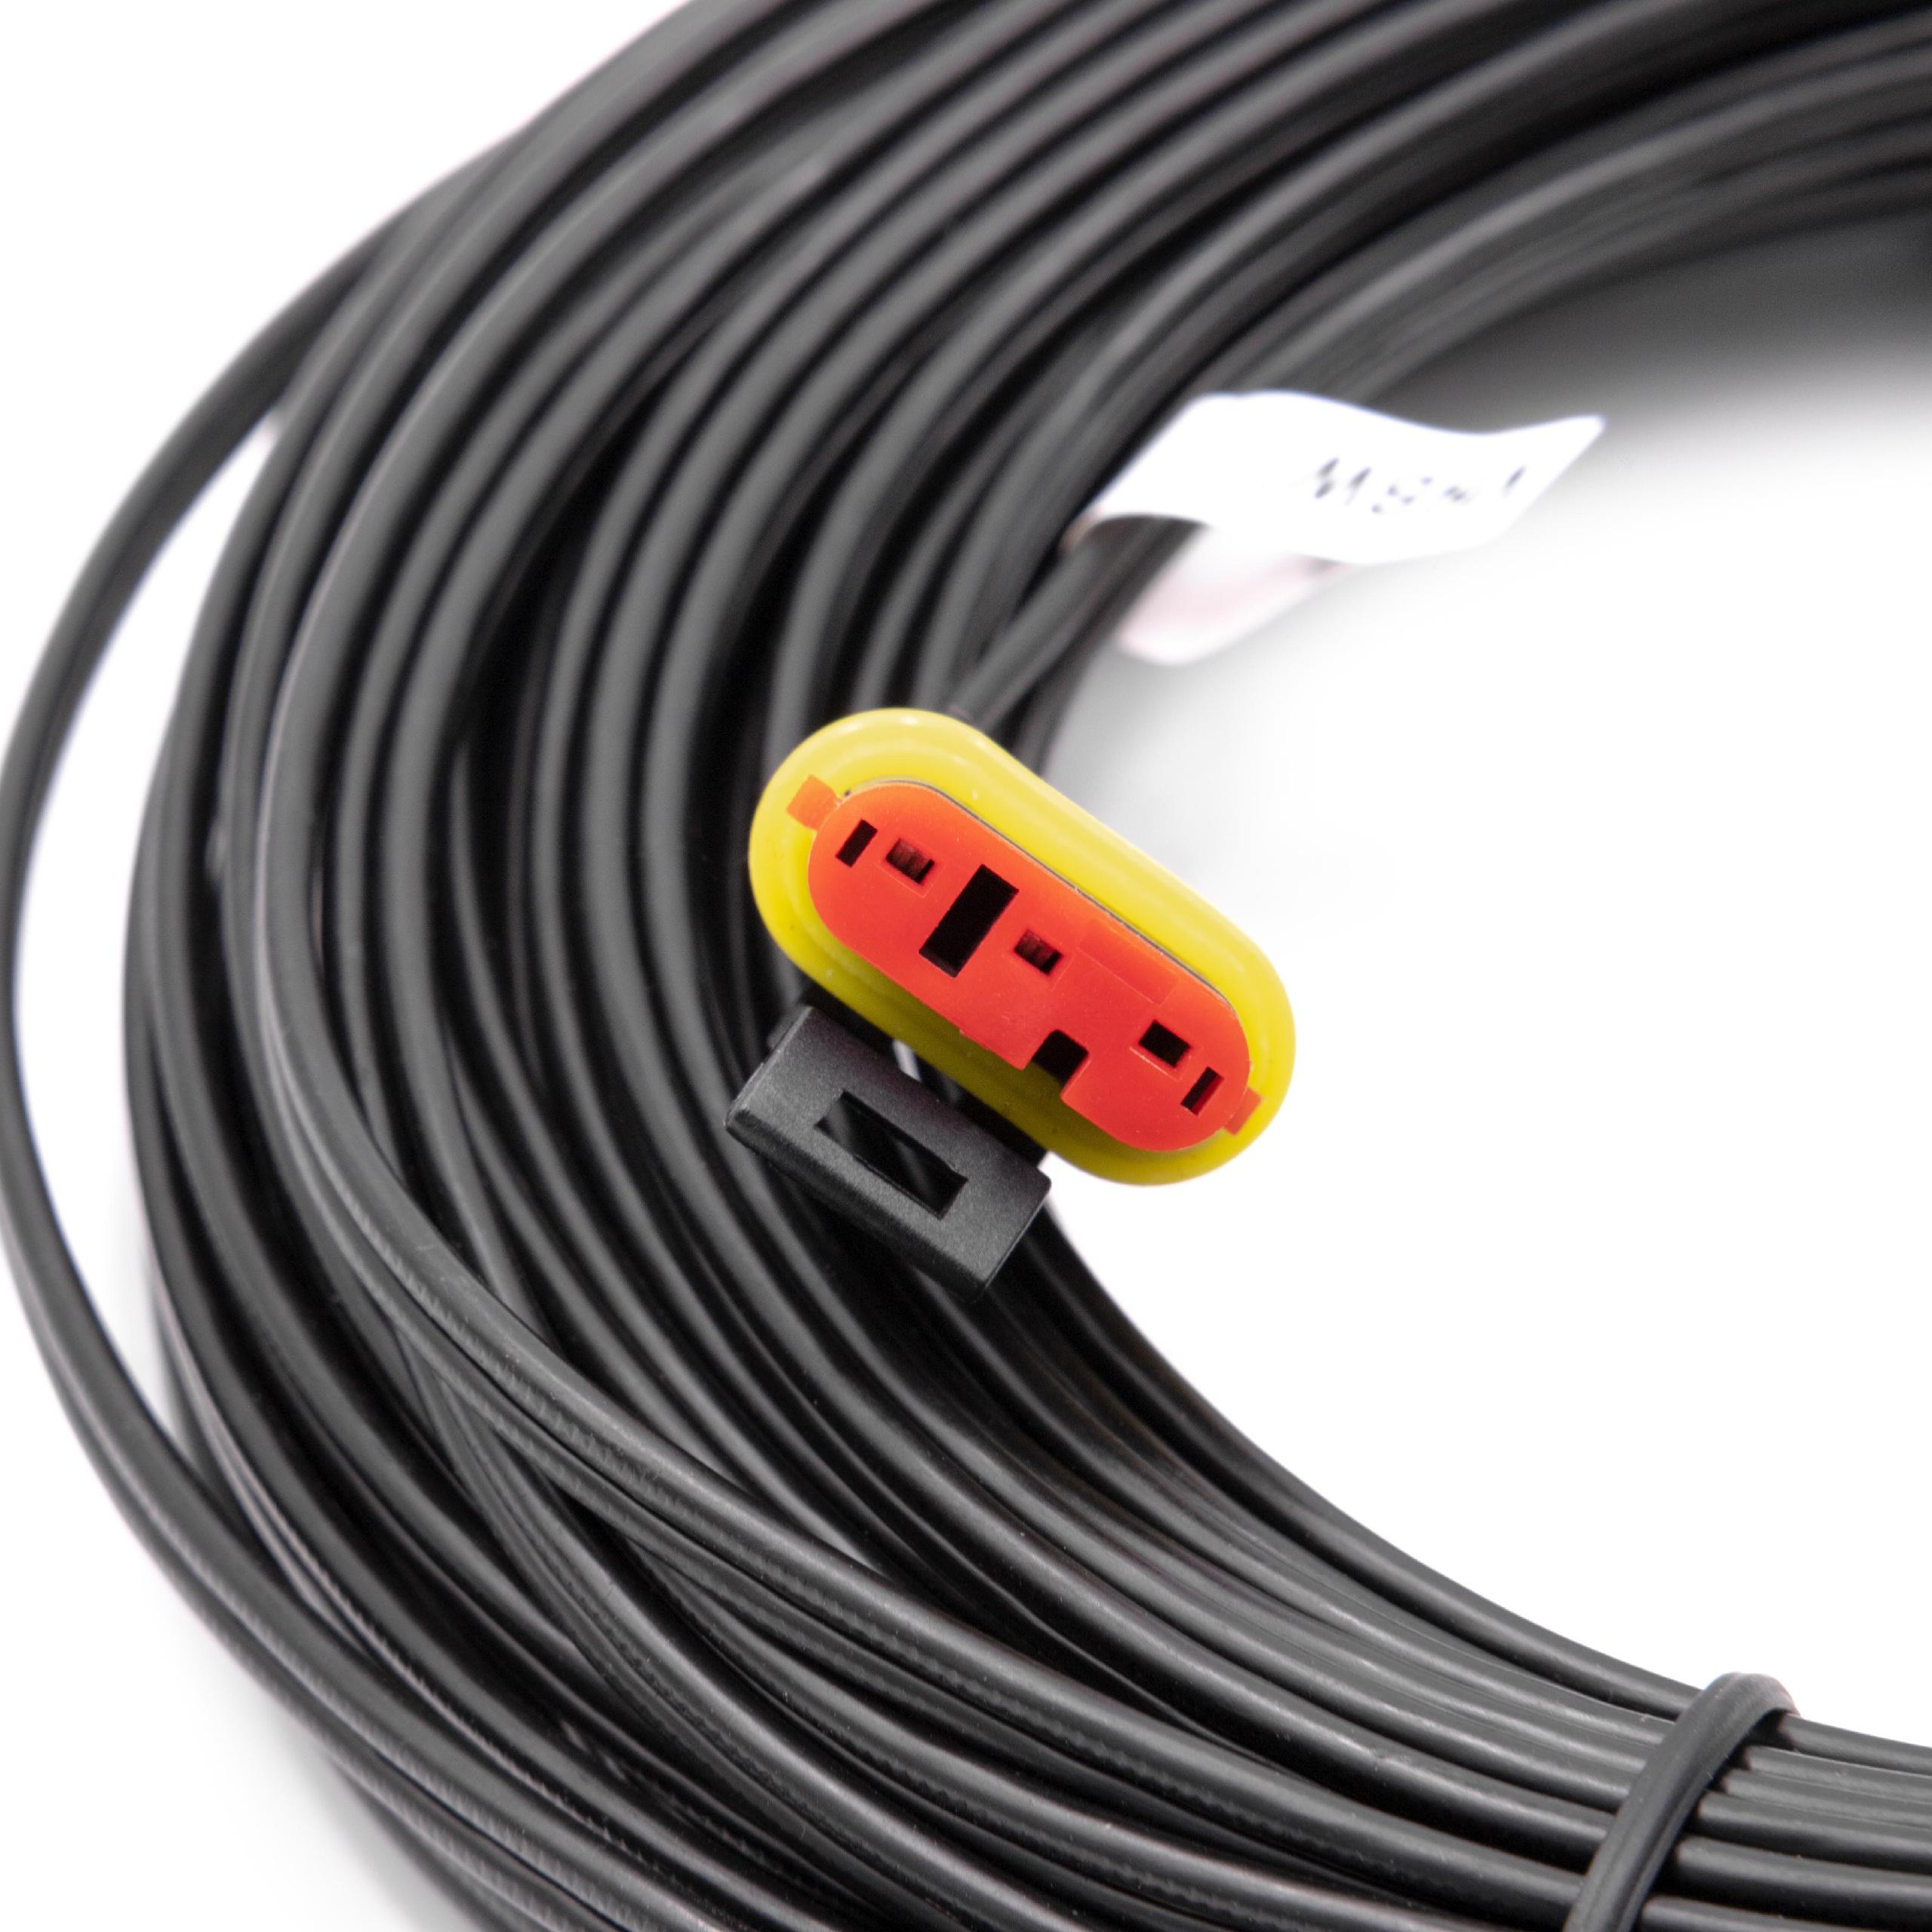 Câble de rechange pour Gardena 00057-98.251.01 pour robot tondeuse - Câble basse tension, 20 m